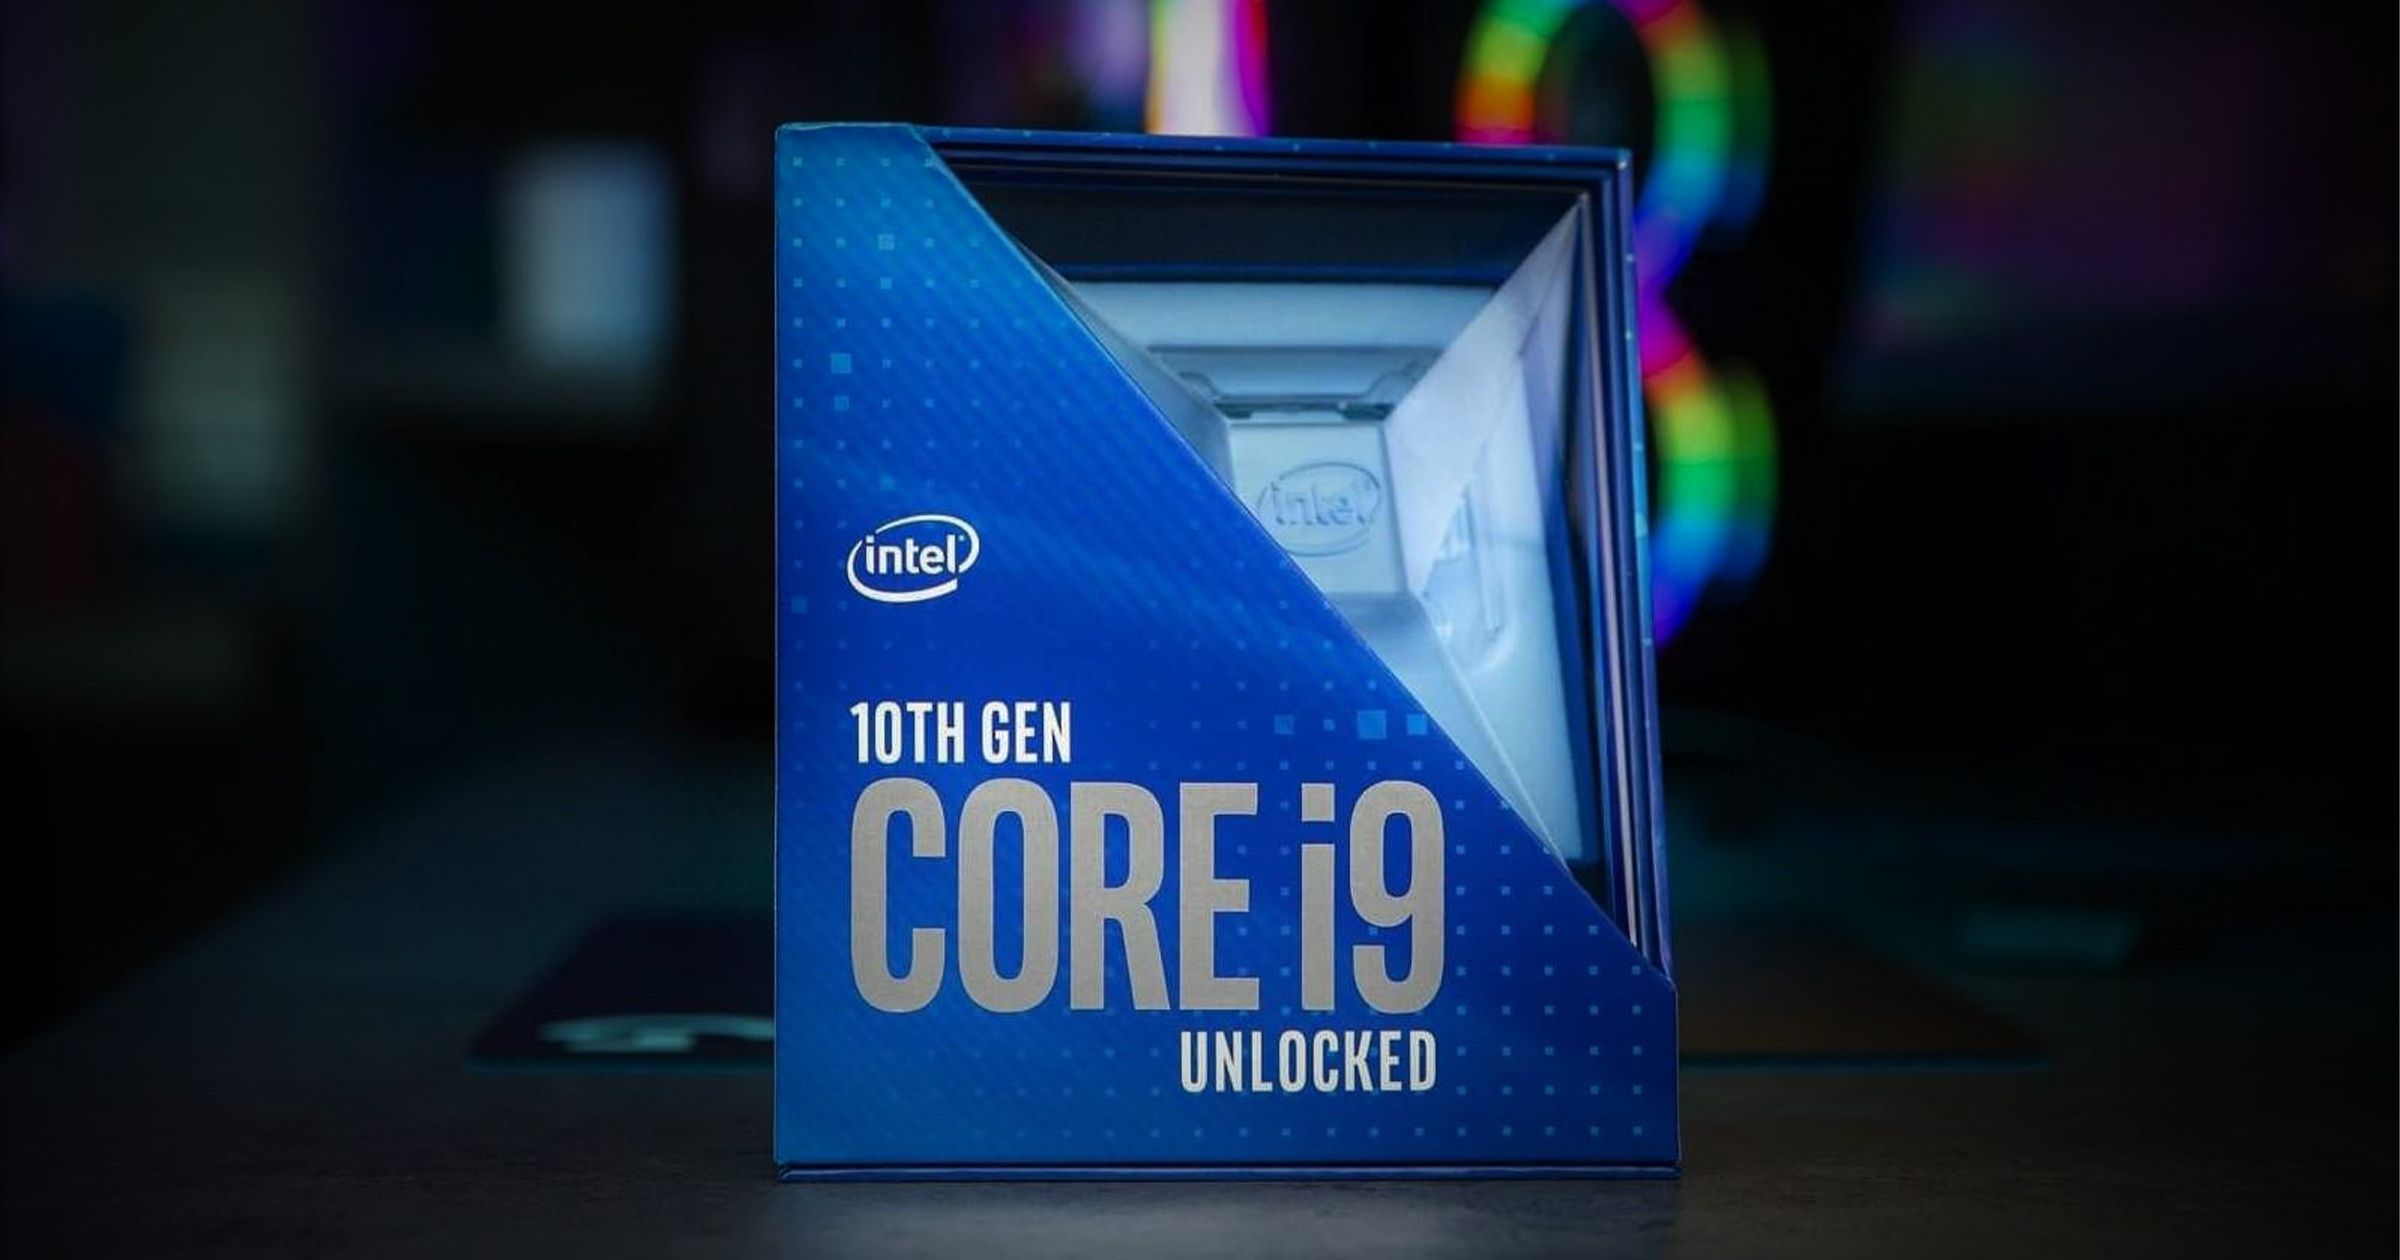 Boxed Intel 10th Gen Core i9 CPU